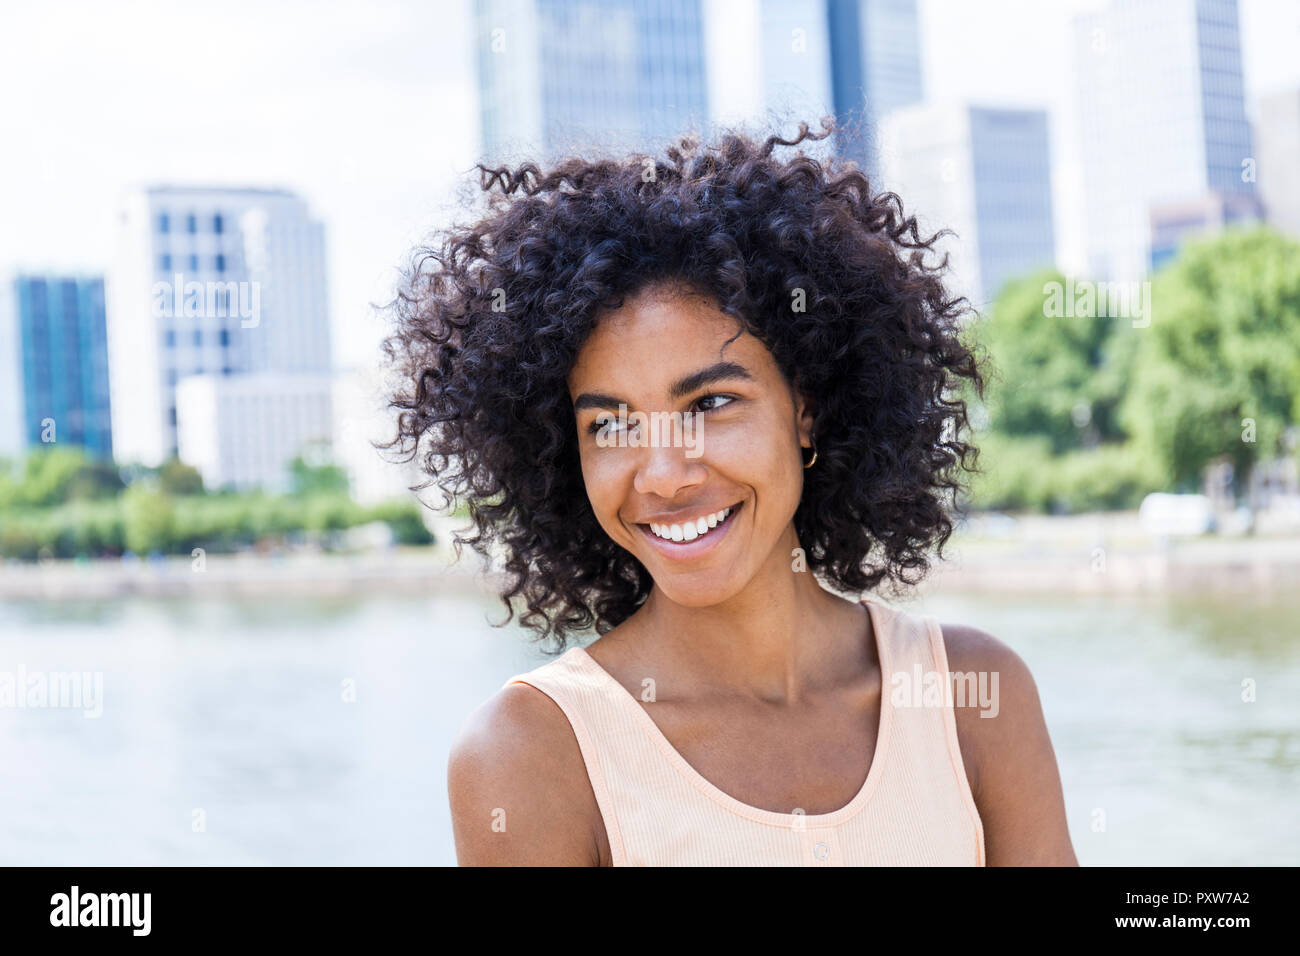 Alemania, Frankfurt, retrato de mujer sonriente con el pelo rizado en frente del río principal Foto de stock